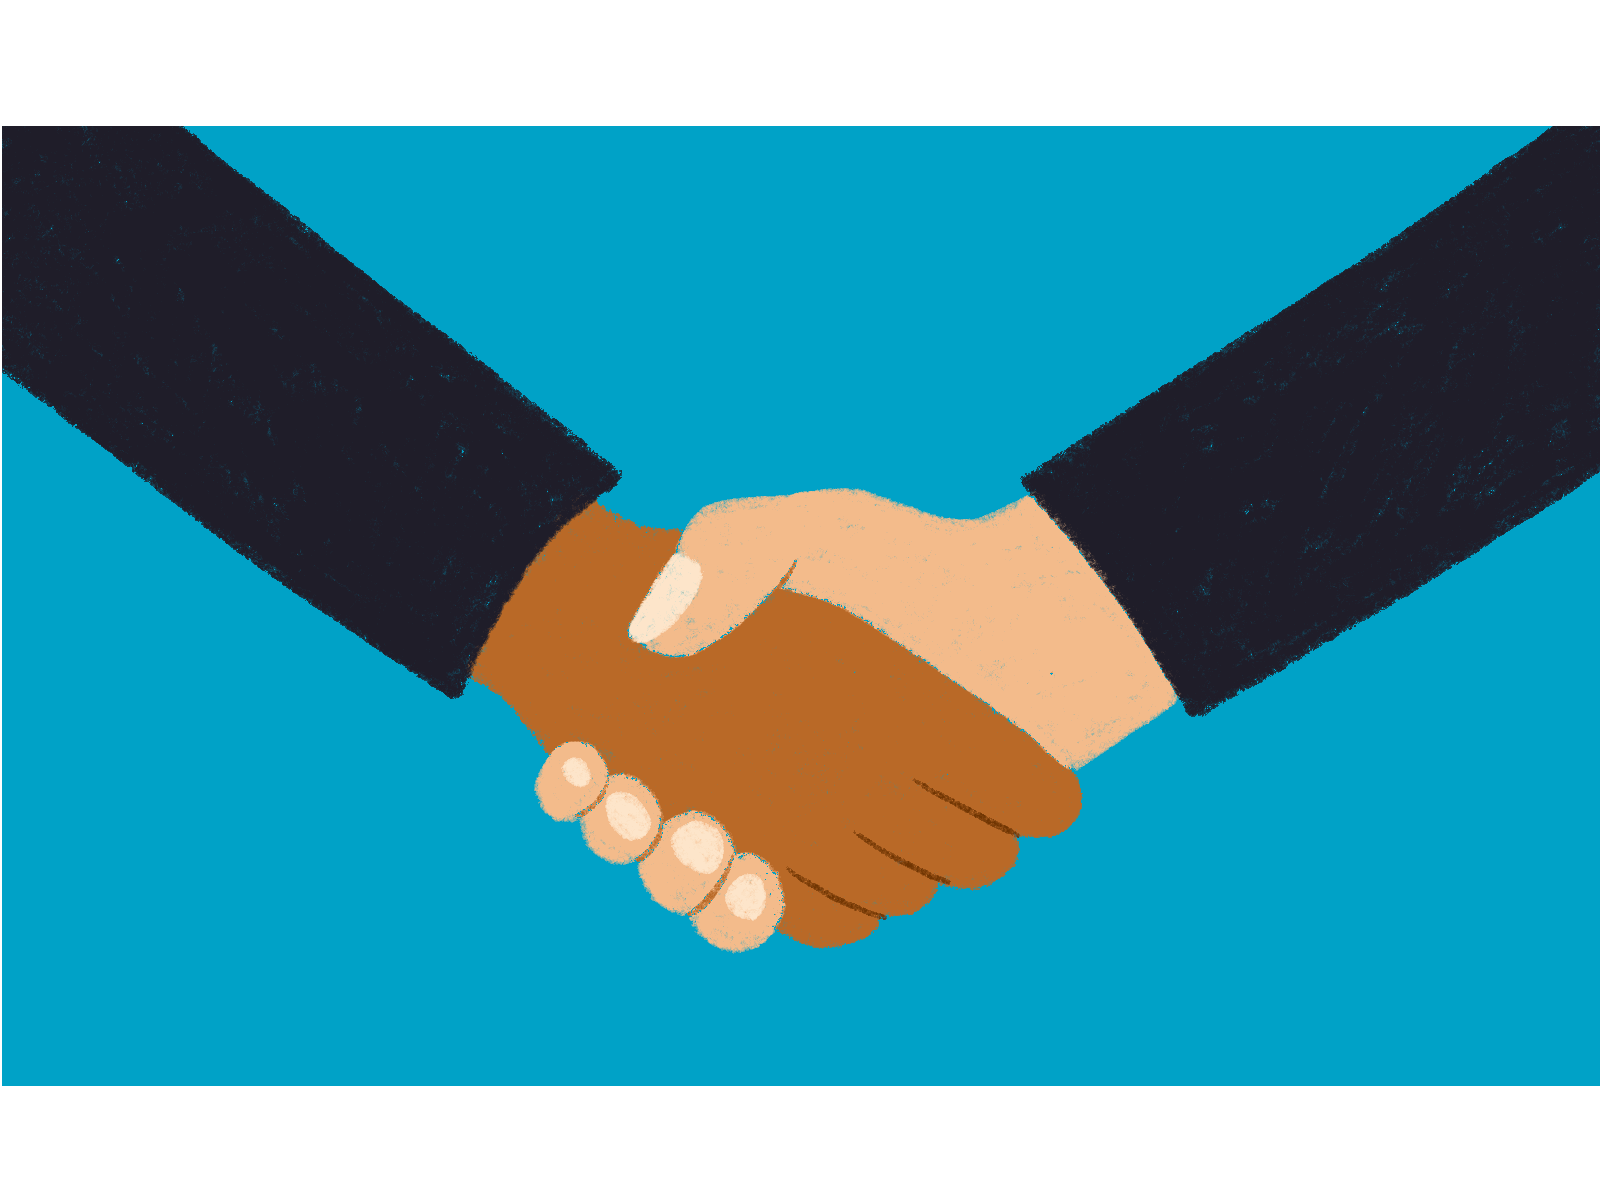 Handshake animation business handshake partners